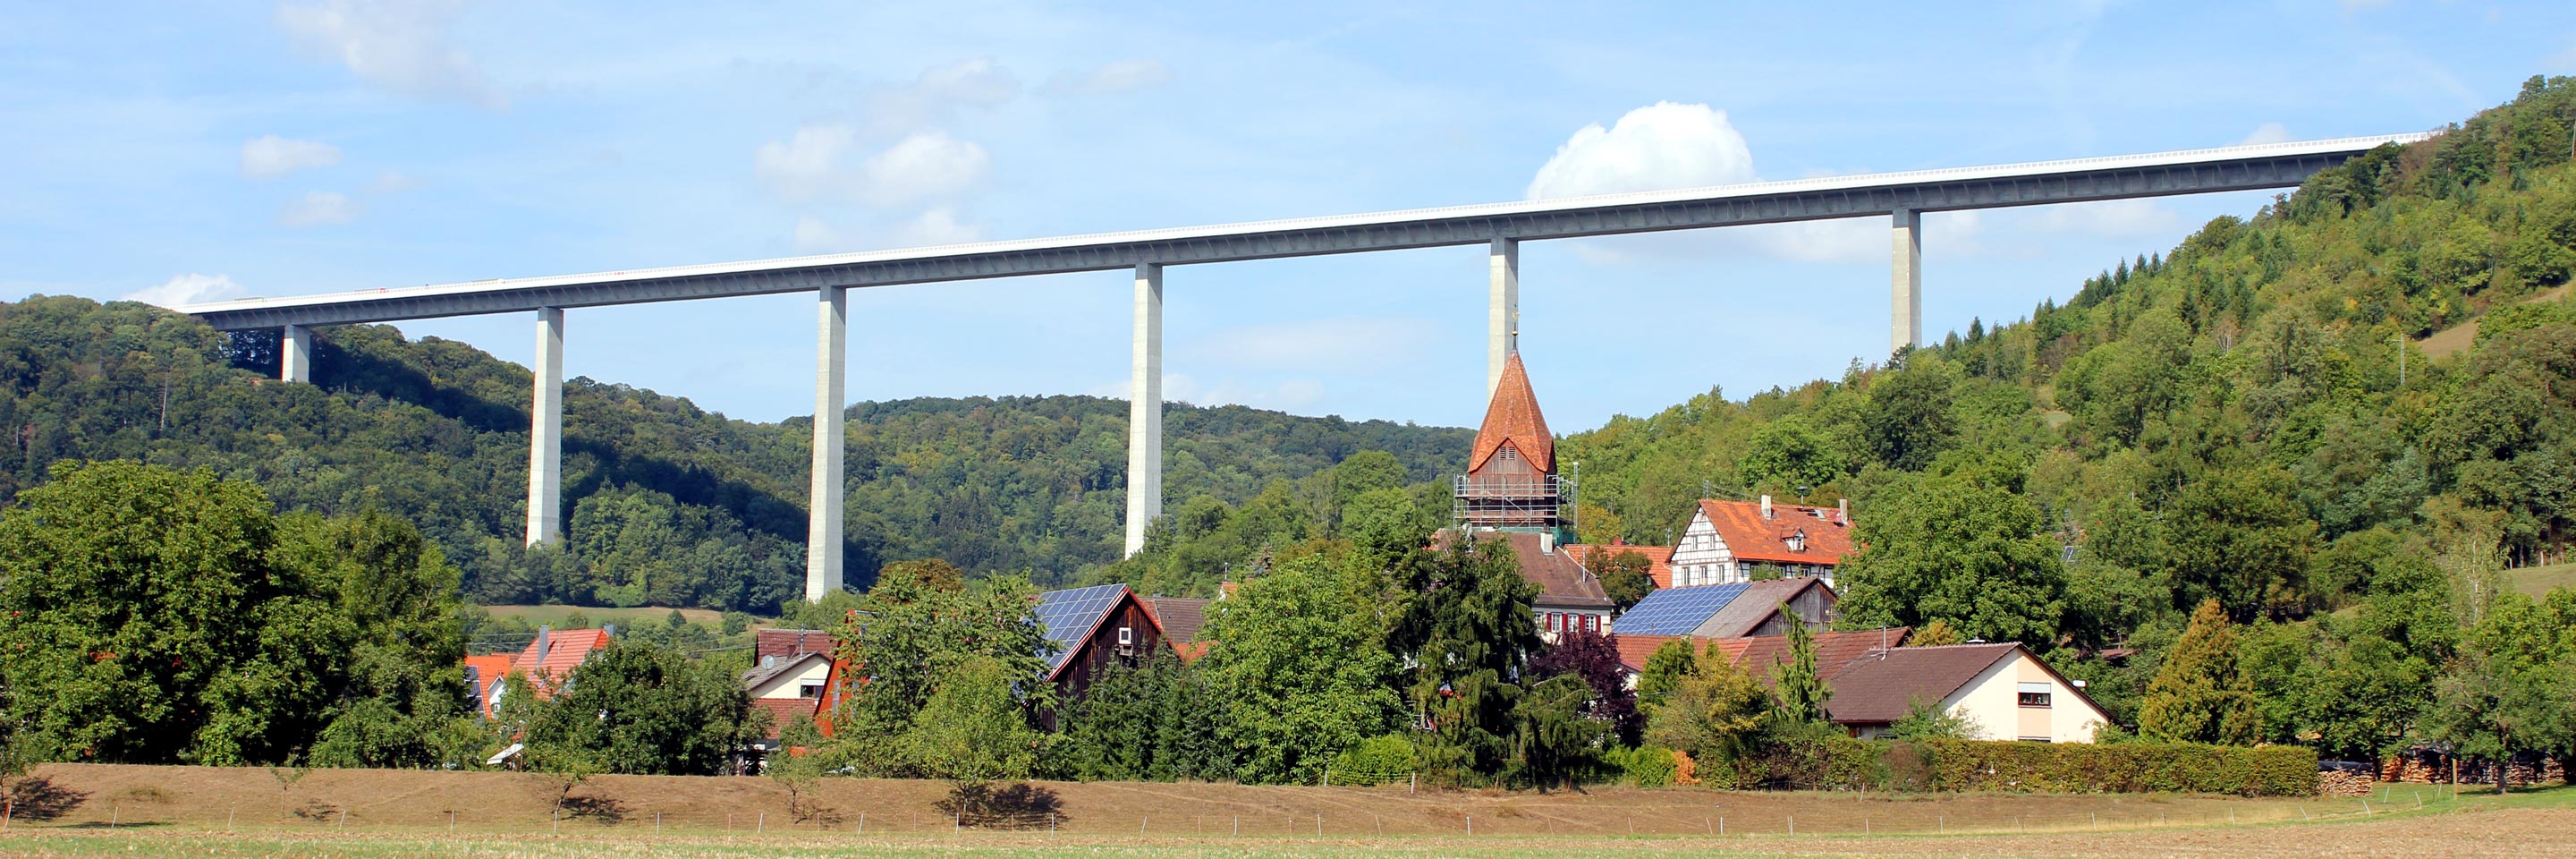 185m hohe Kochertal-Autobahnbrücke 